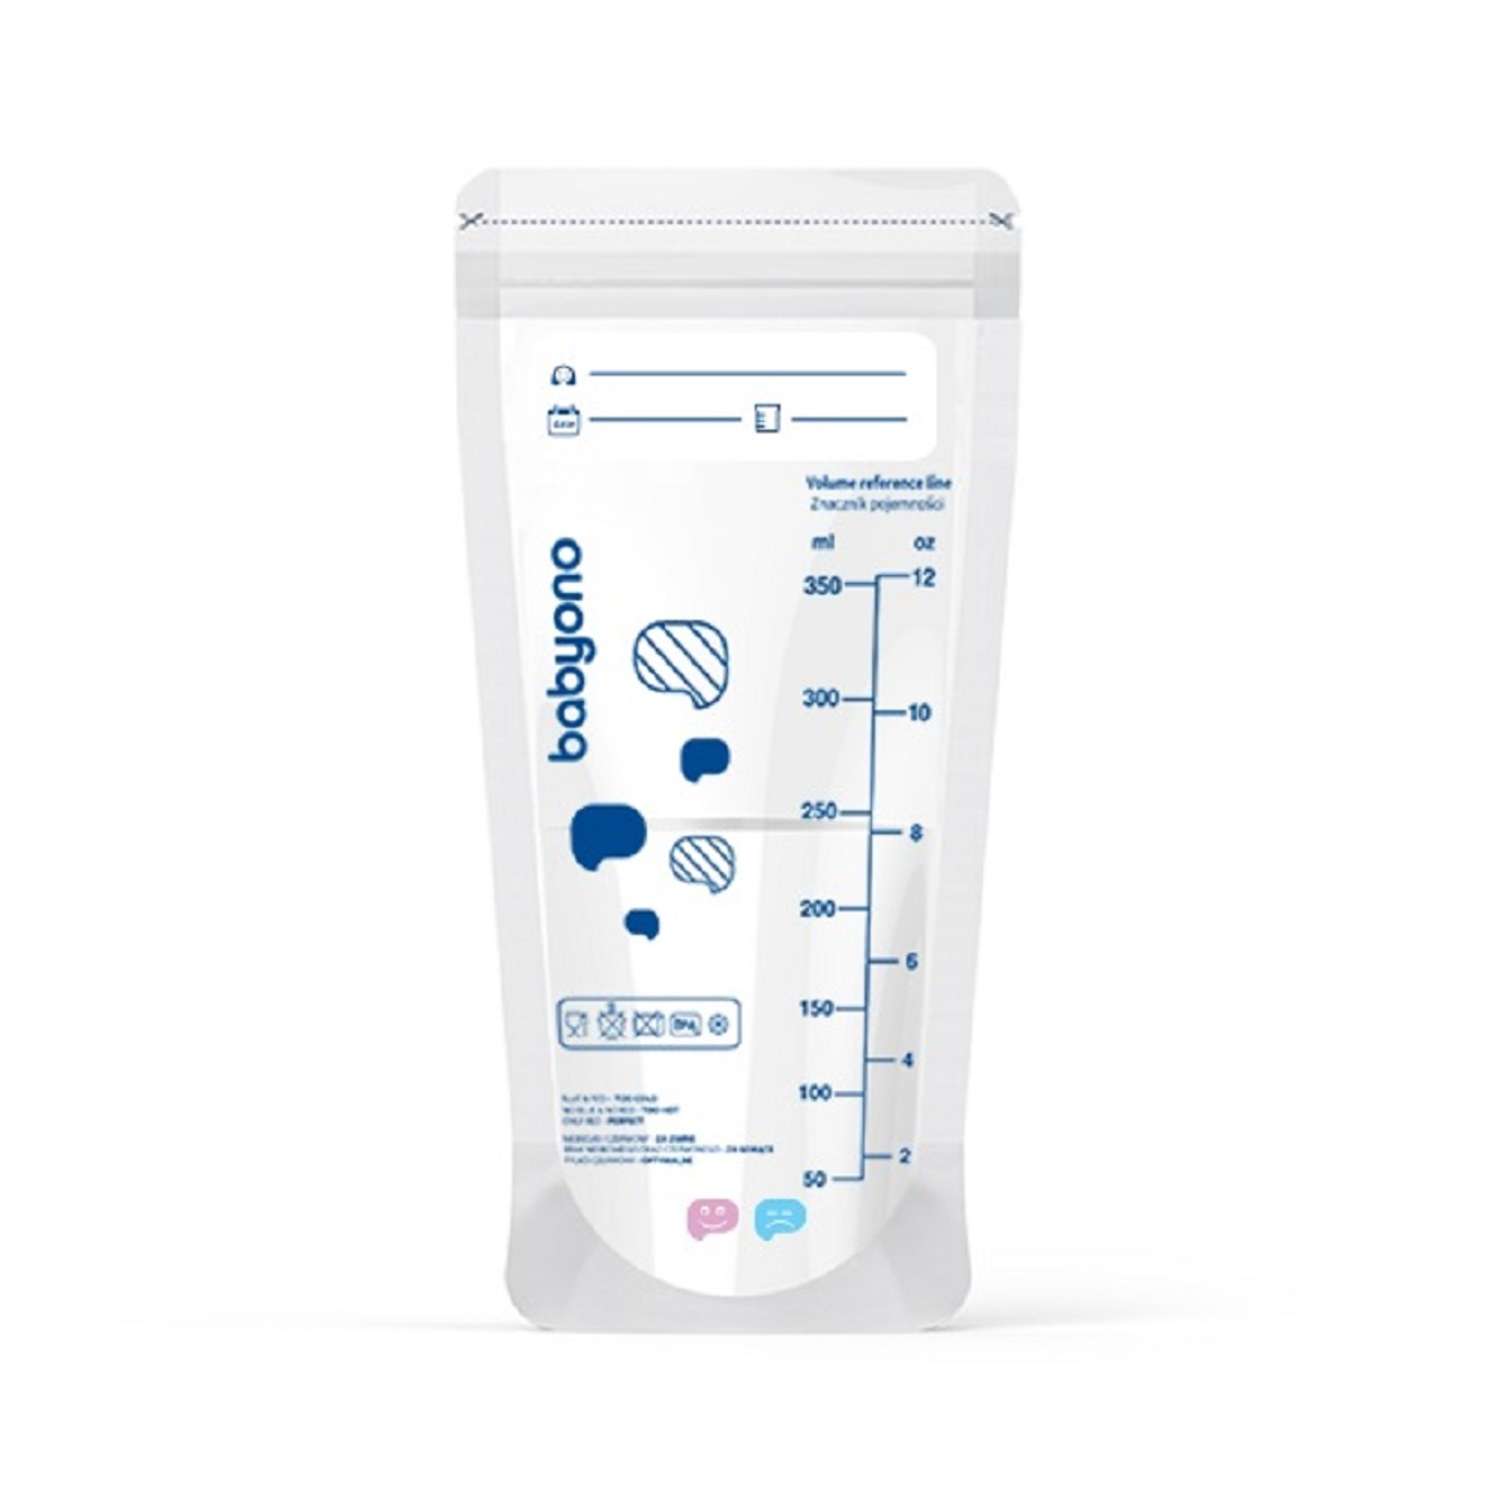 Пакеты Babyono для хранения грудного молока с индикатором 20шт. в упаковке - фото 7